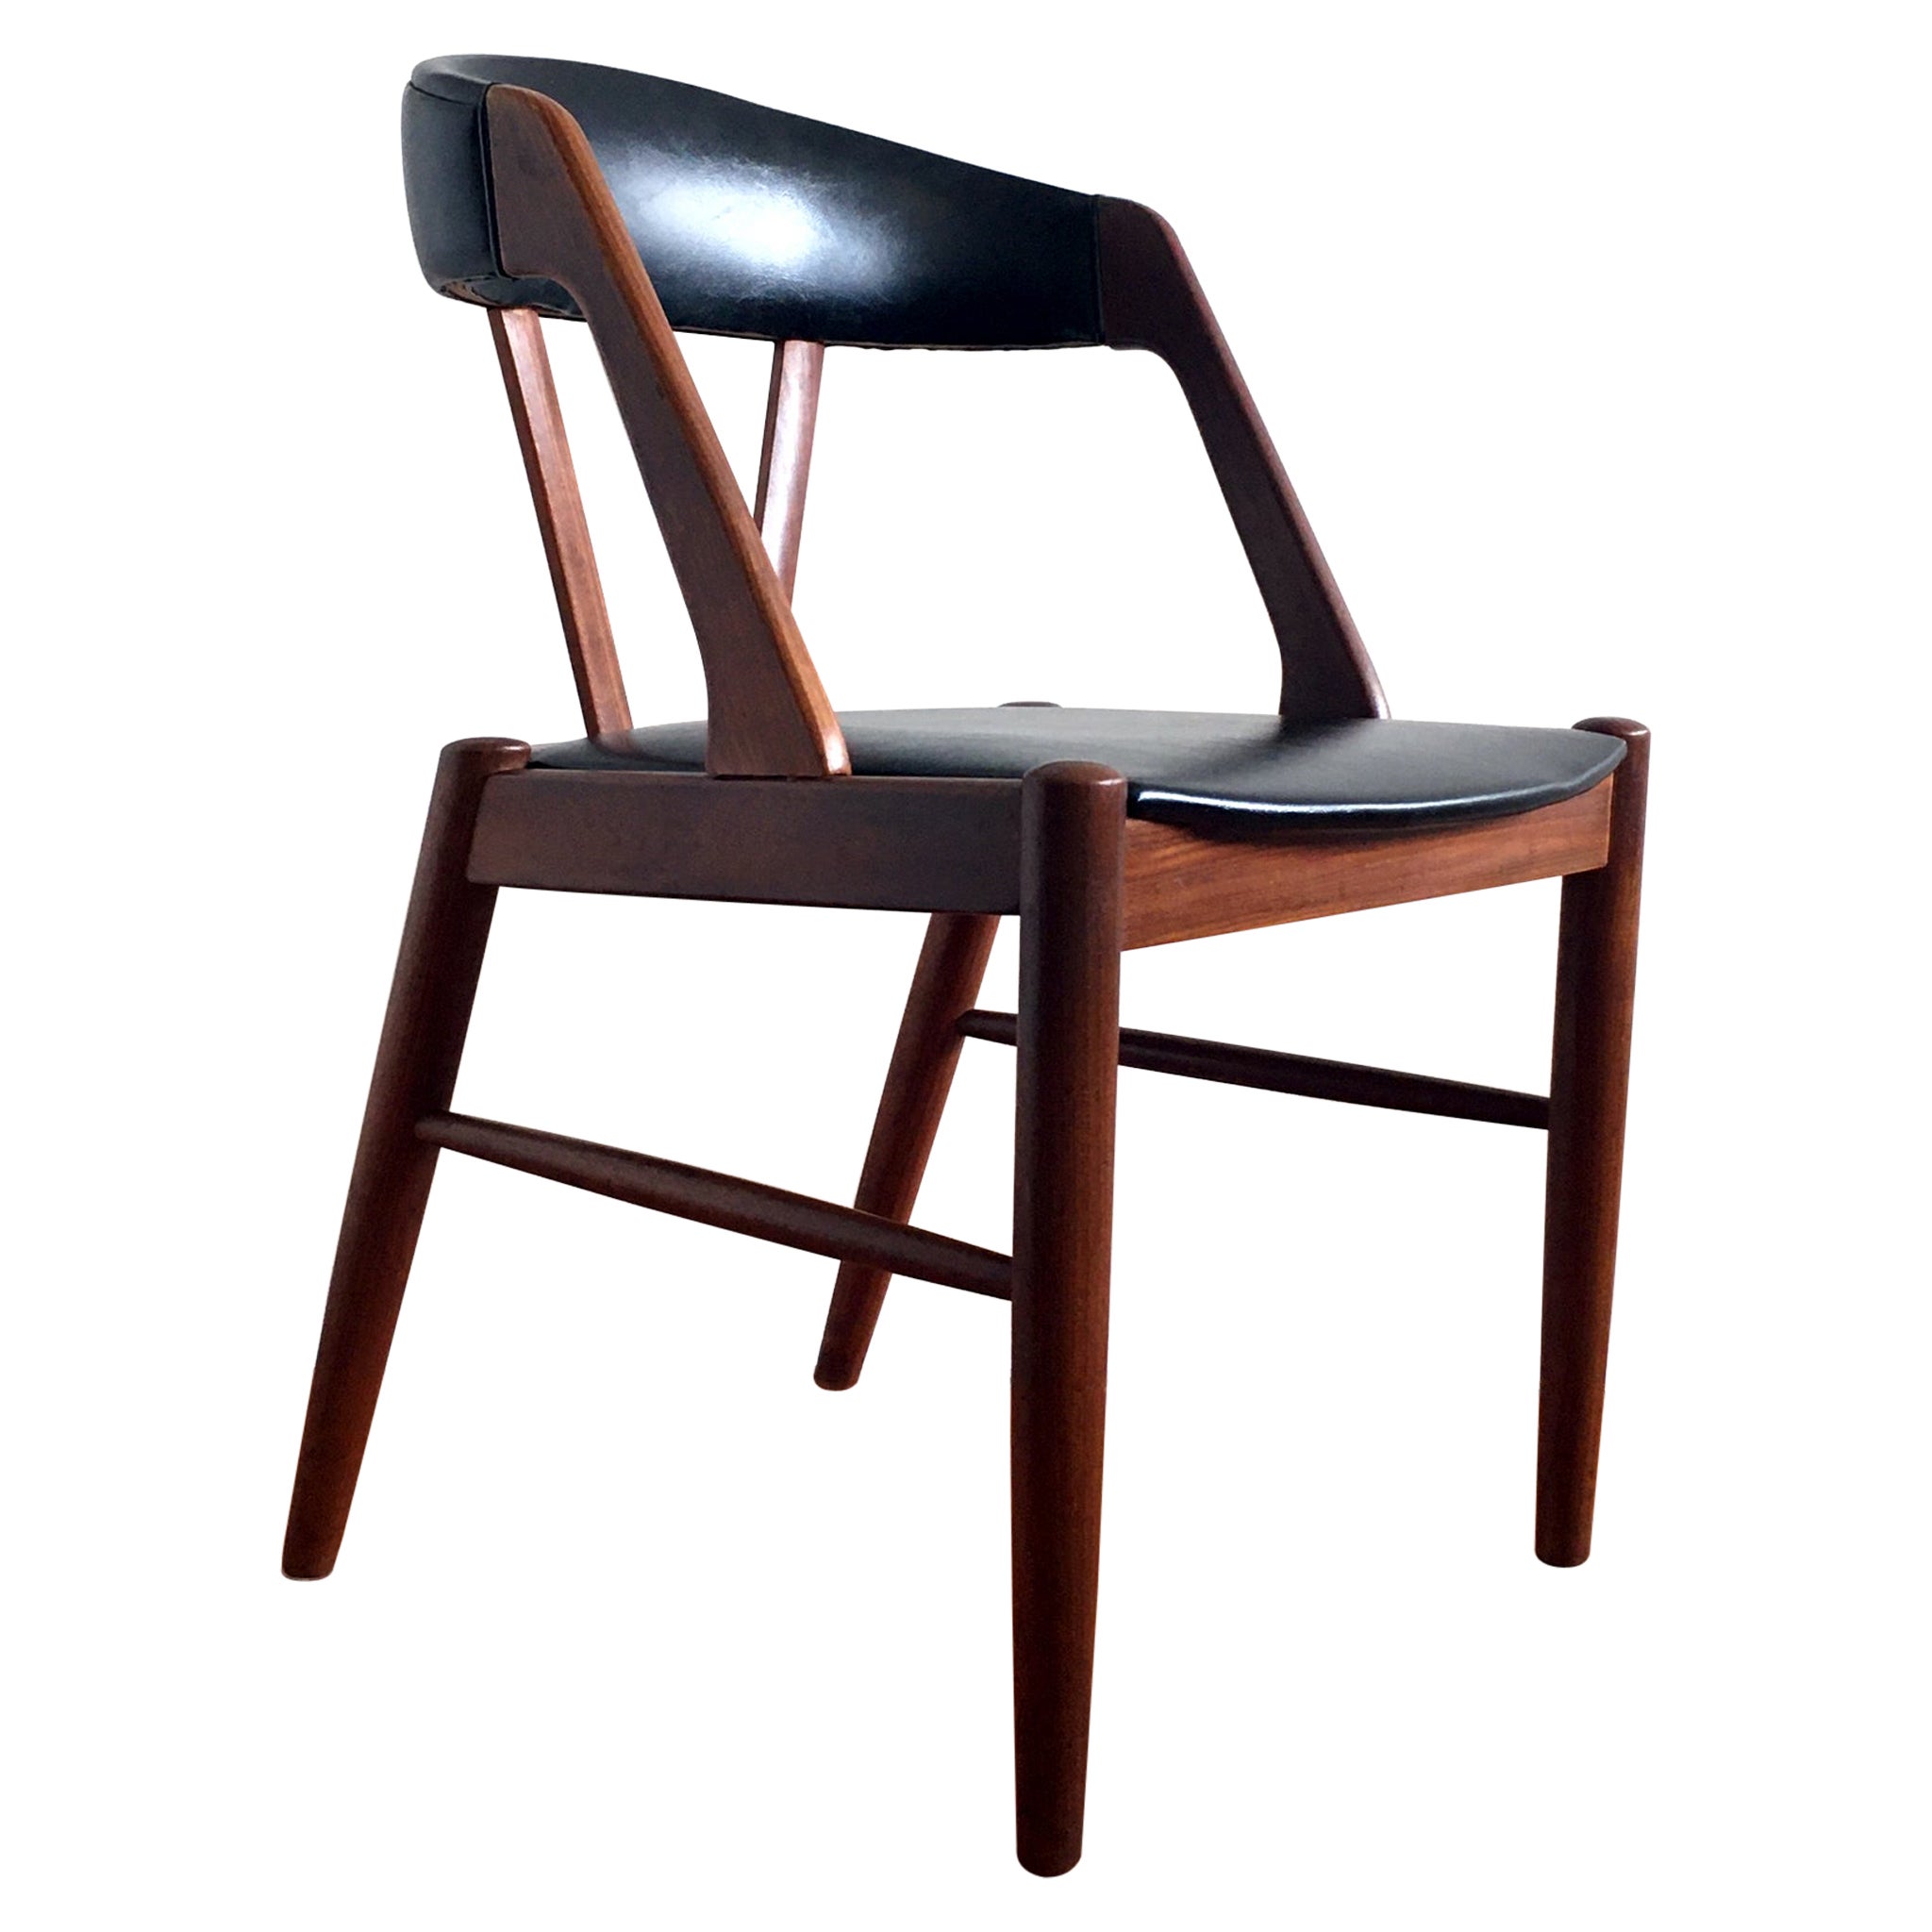 1960's Kai Kristiansen Style Midcentury Teak and Black Chair